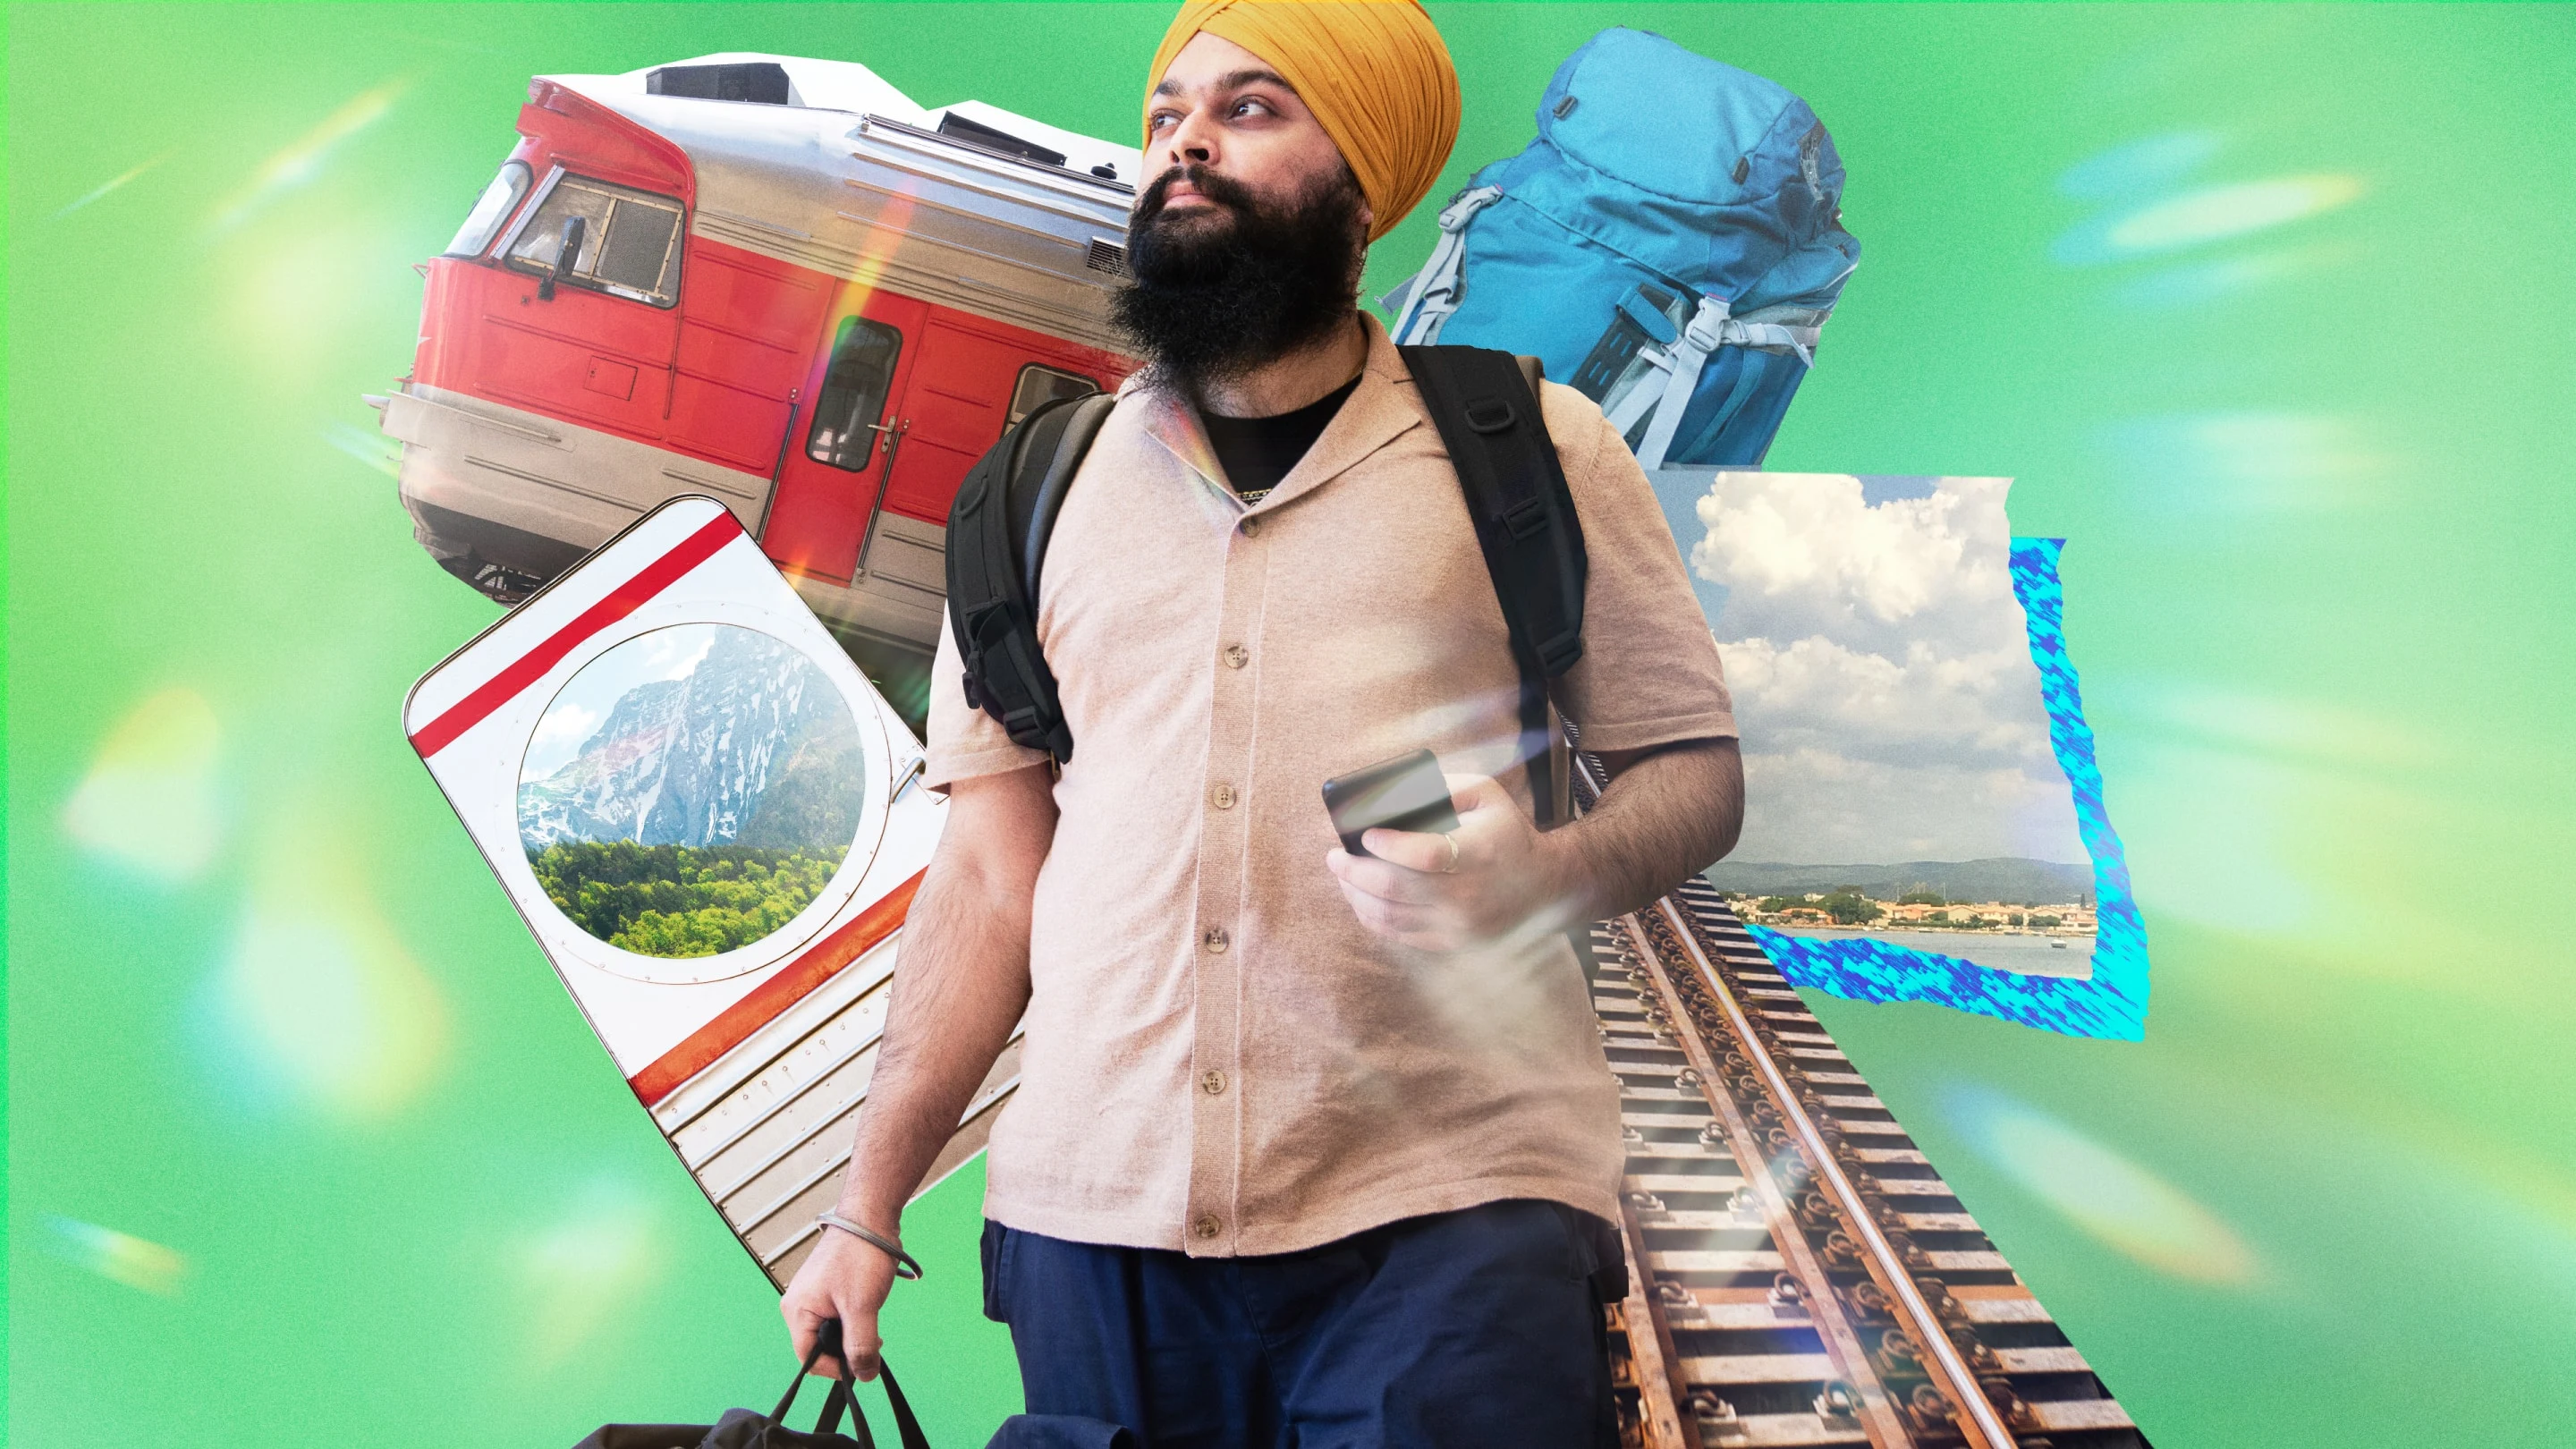 Colagem com um homem sikh usando uma mochila, cercado por trilhos de trem desconstruídos, a vista de uma janela com uma paisagem montanhosa e o vagão de um trem de passageiros.